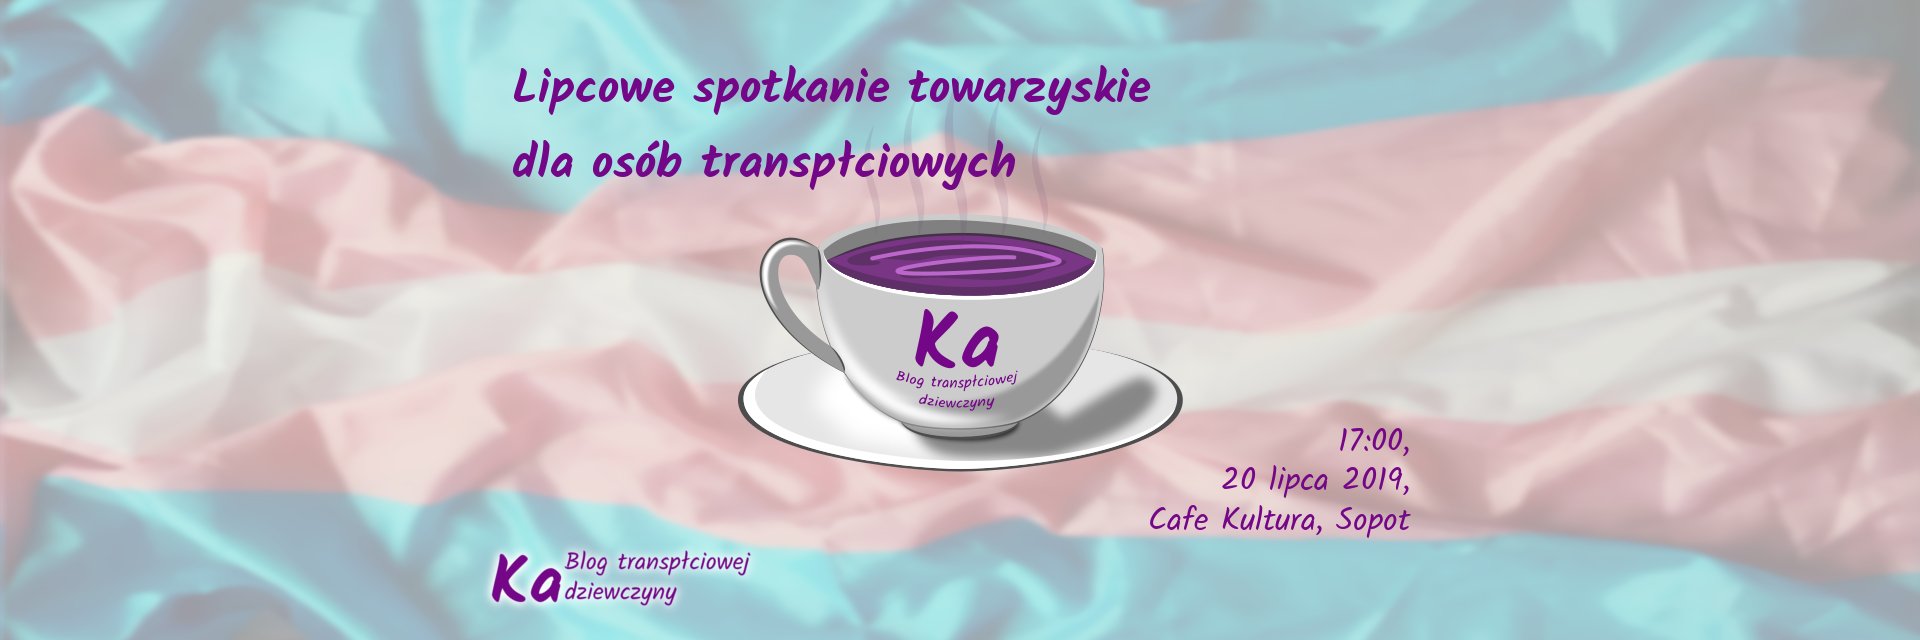 Lipcowe spotkanie towarzyskie dla osób transpłciowych, Cafe Kultura, Sopot